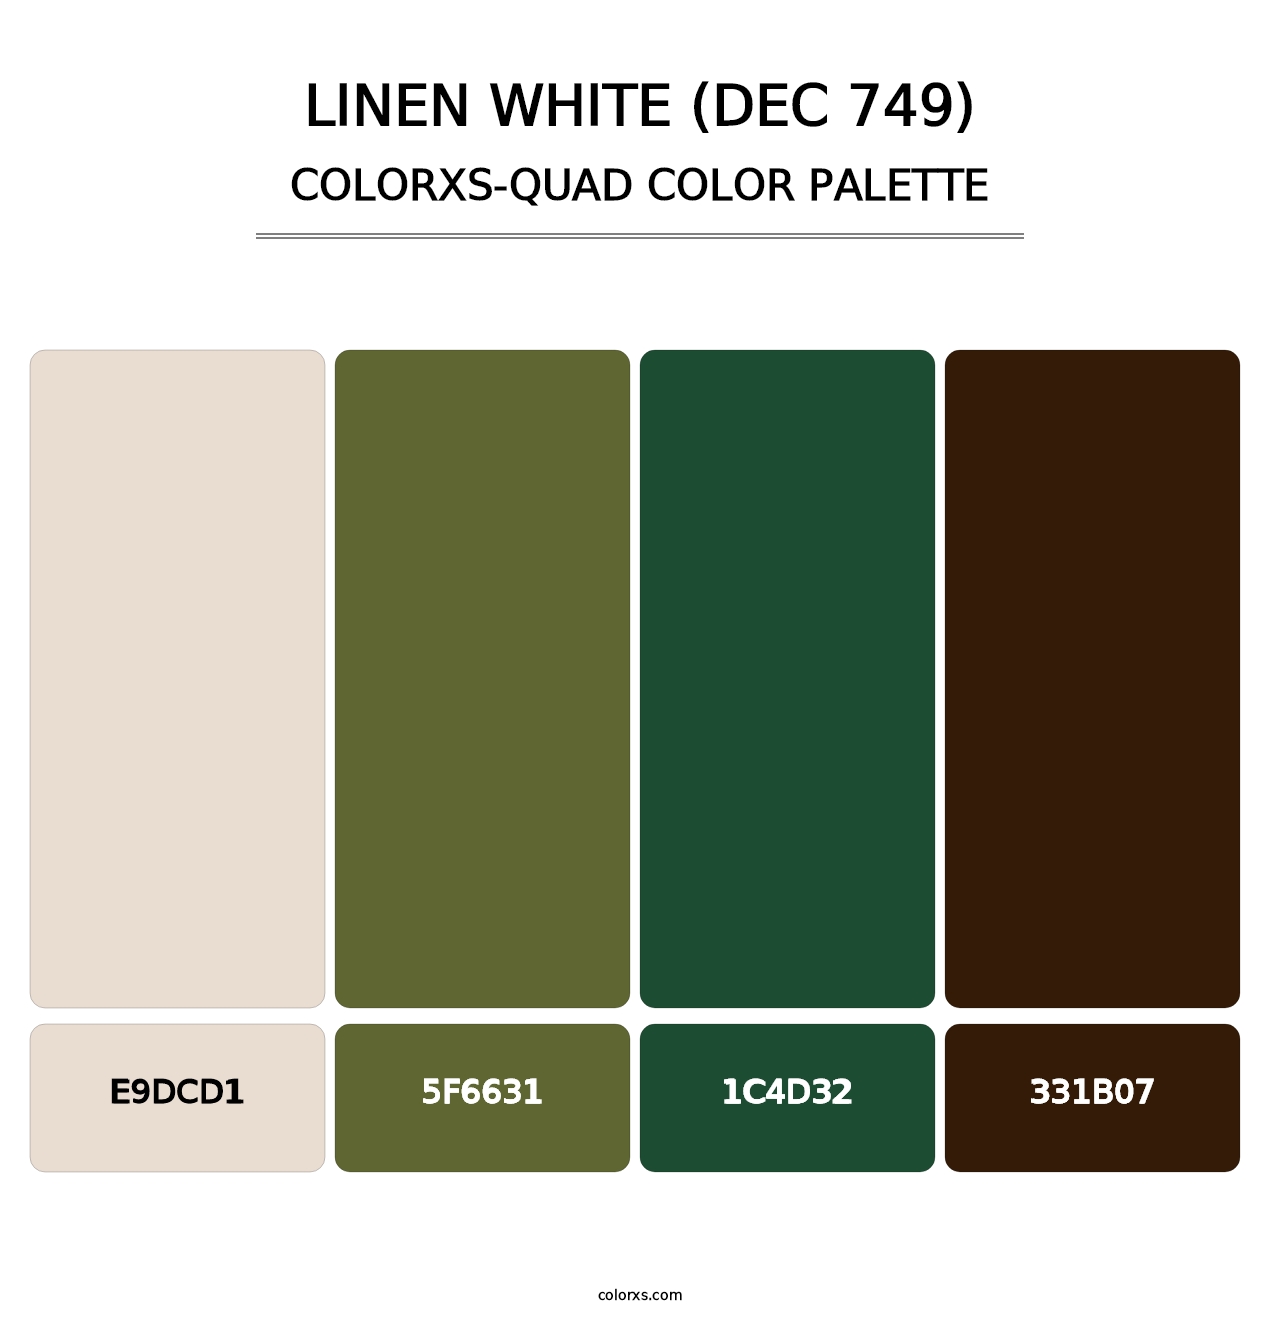 Linen White (DEC 749) - Colorxs Quad Palette